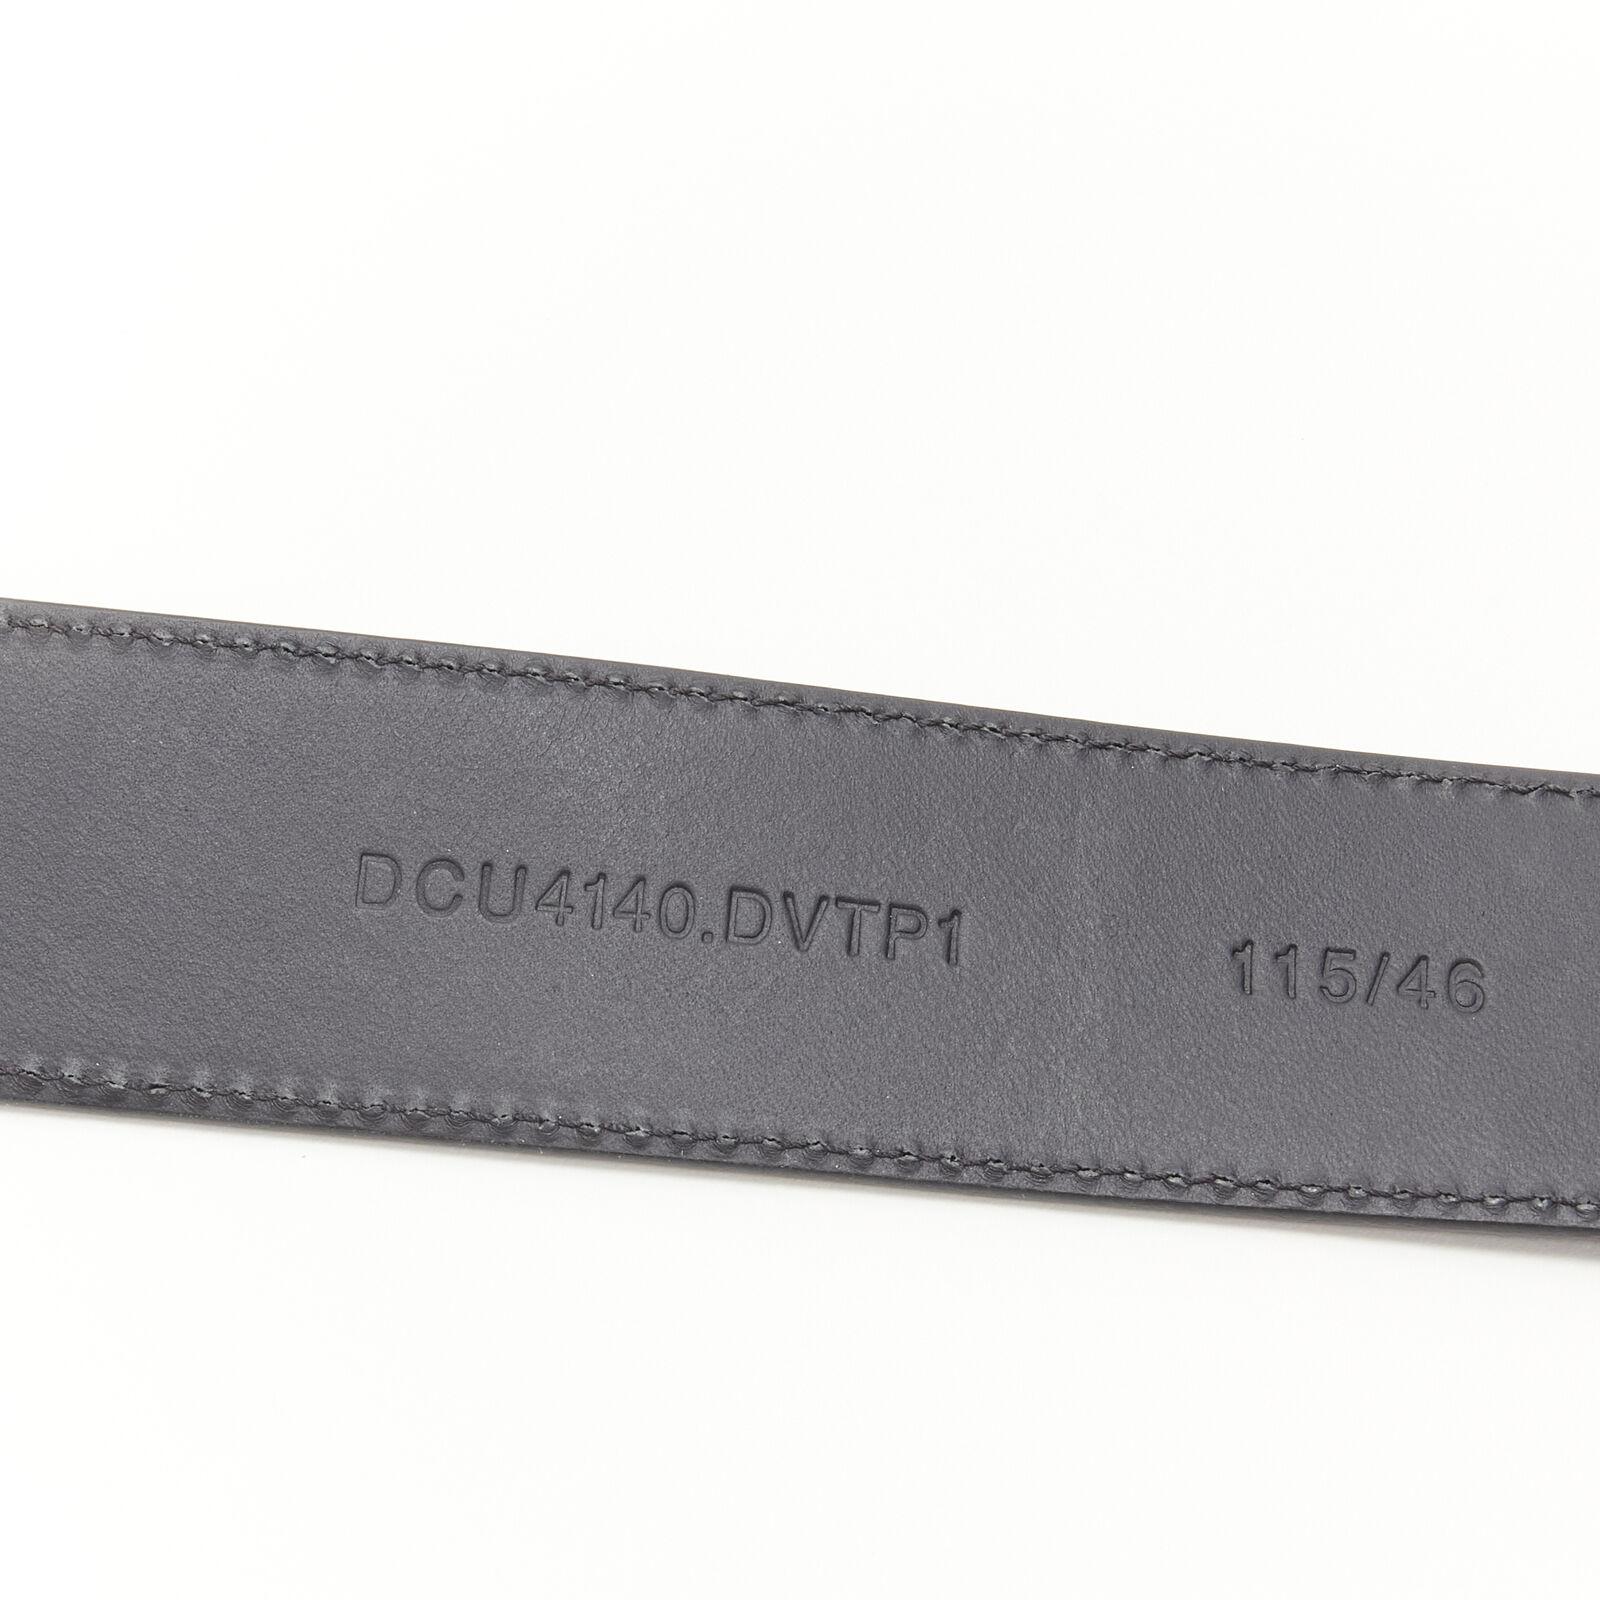 VERSACE La Medusa ruthenium silver buckle black leather belt 115cm 44-48